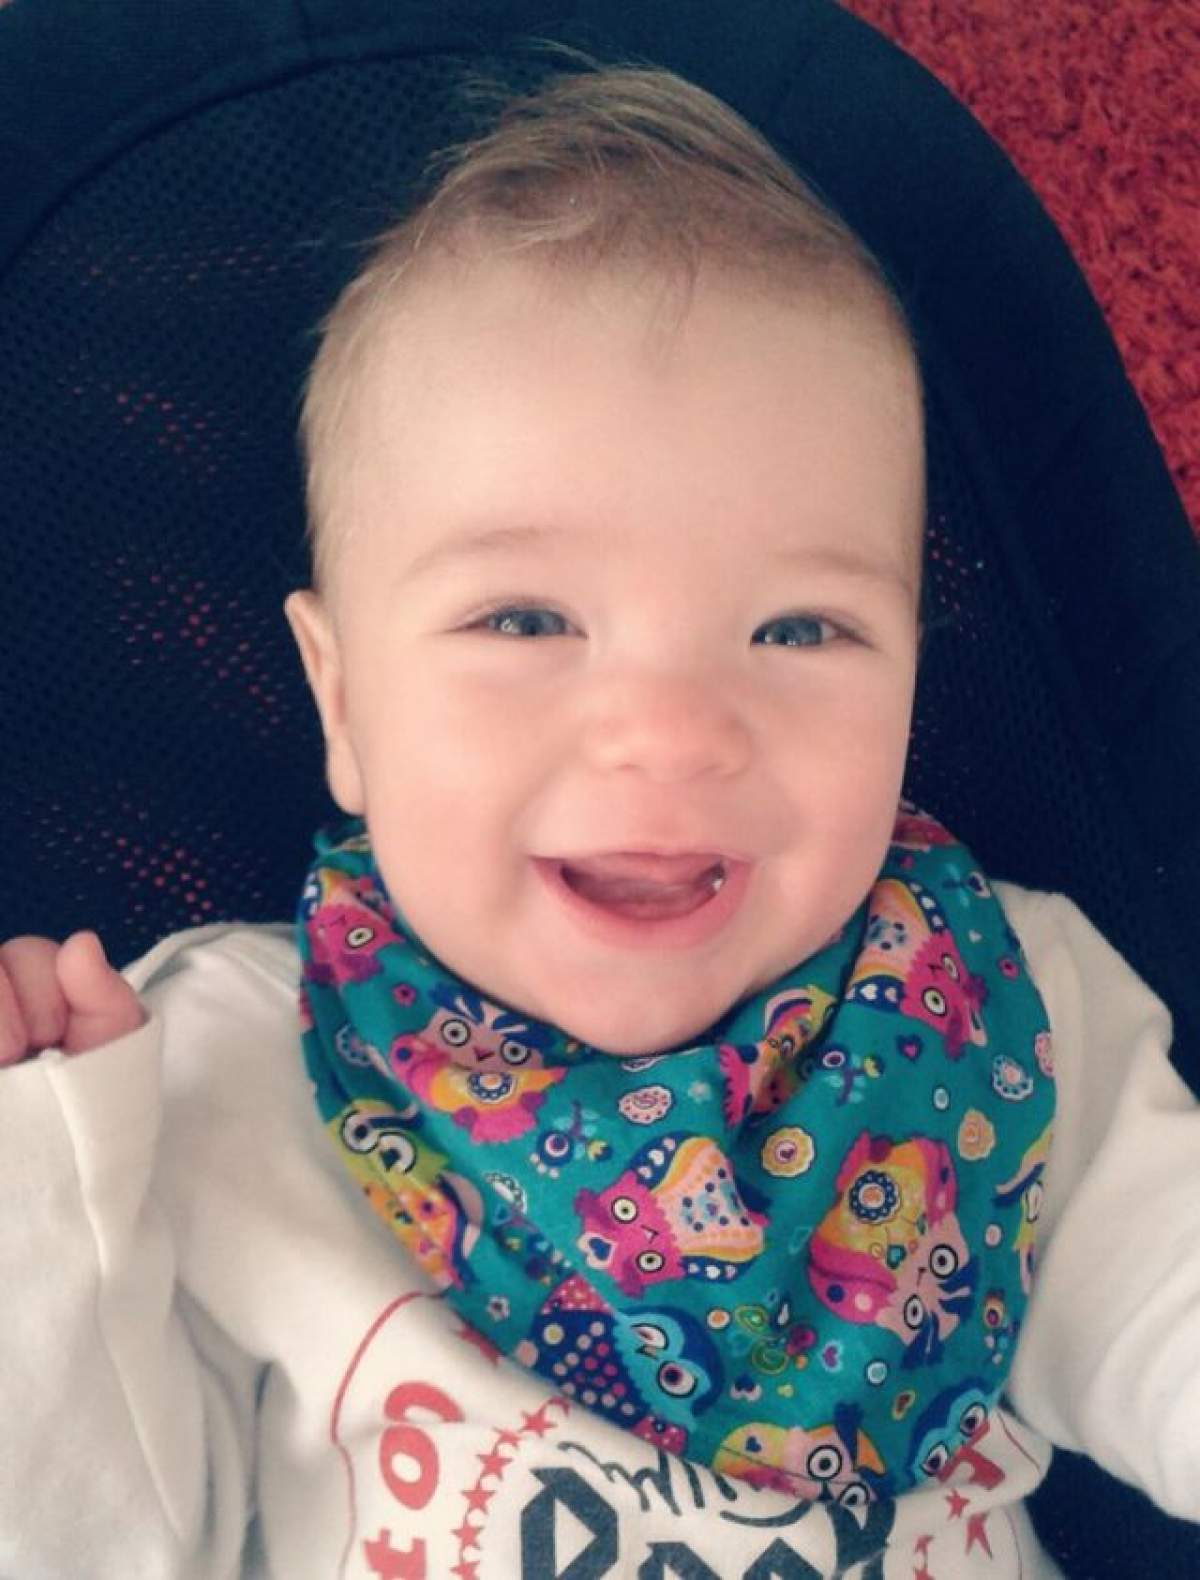 Pasiune dusă la extrem! O vedetă de la noi i-a făcut blog bebeluşului său de 8 luni